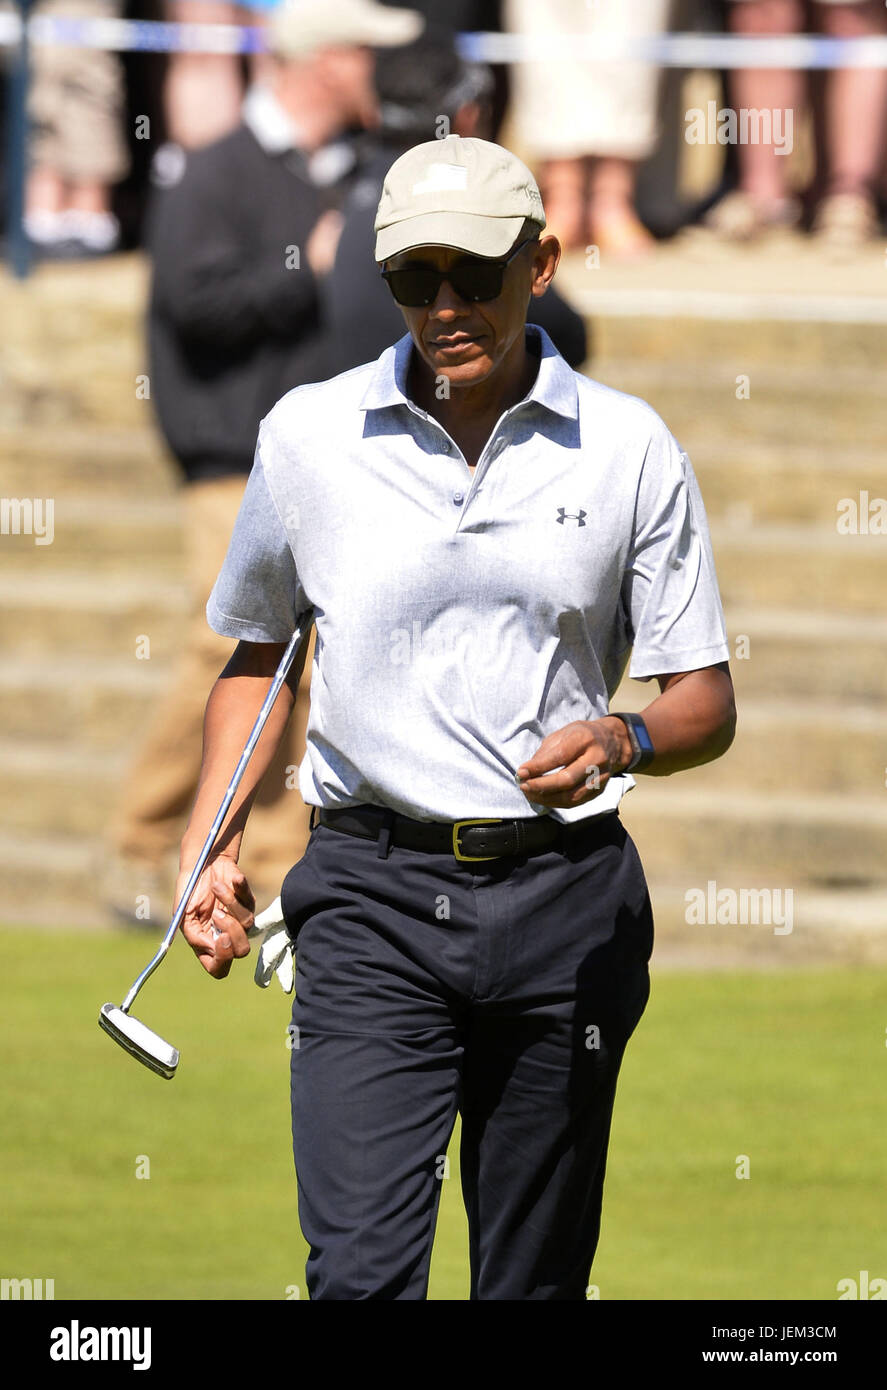 Ehemalige US-Präsident Barack Obama (hellblaues Hemd) spielen eine Runde Golf auf dem Old Course in St. Andrews auf der Küste von Fife in Schottland.  Mitwirkende: Barack Obama wo: Schottland, Vereinigtes Königreich bei: 26. Mai 2017 Stockfoto